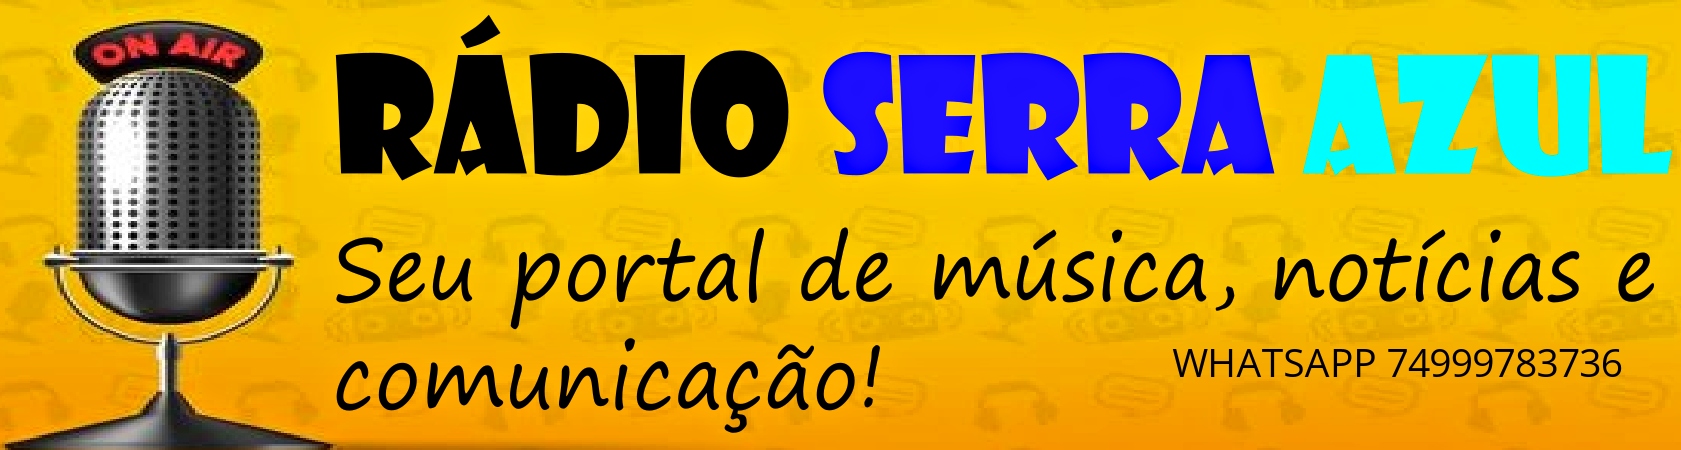 www.radioserraazul.net